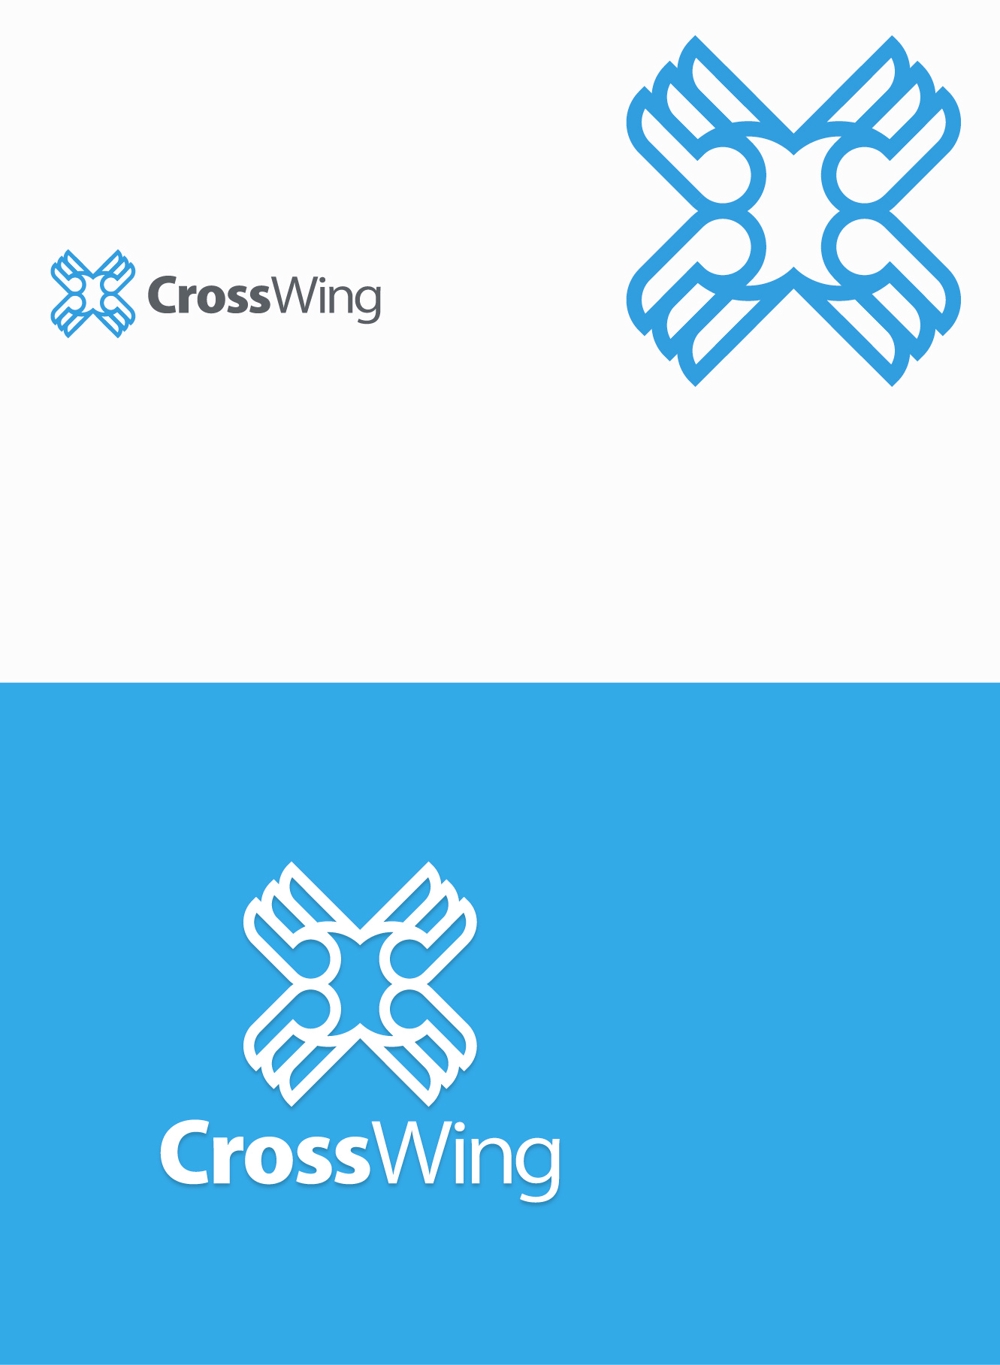 CrossWing4.jpg